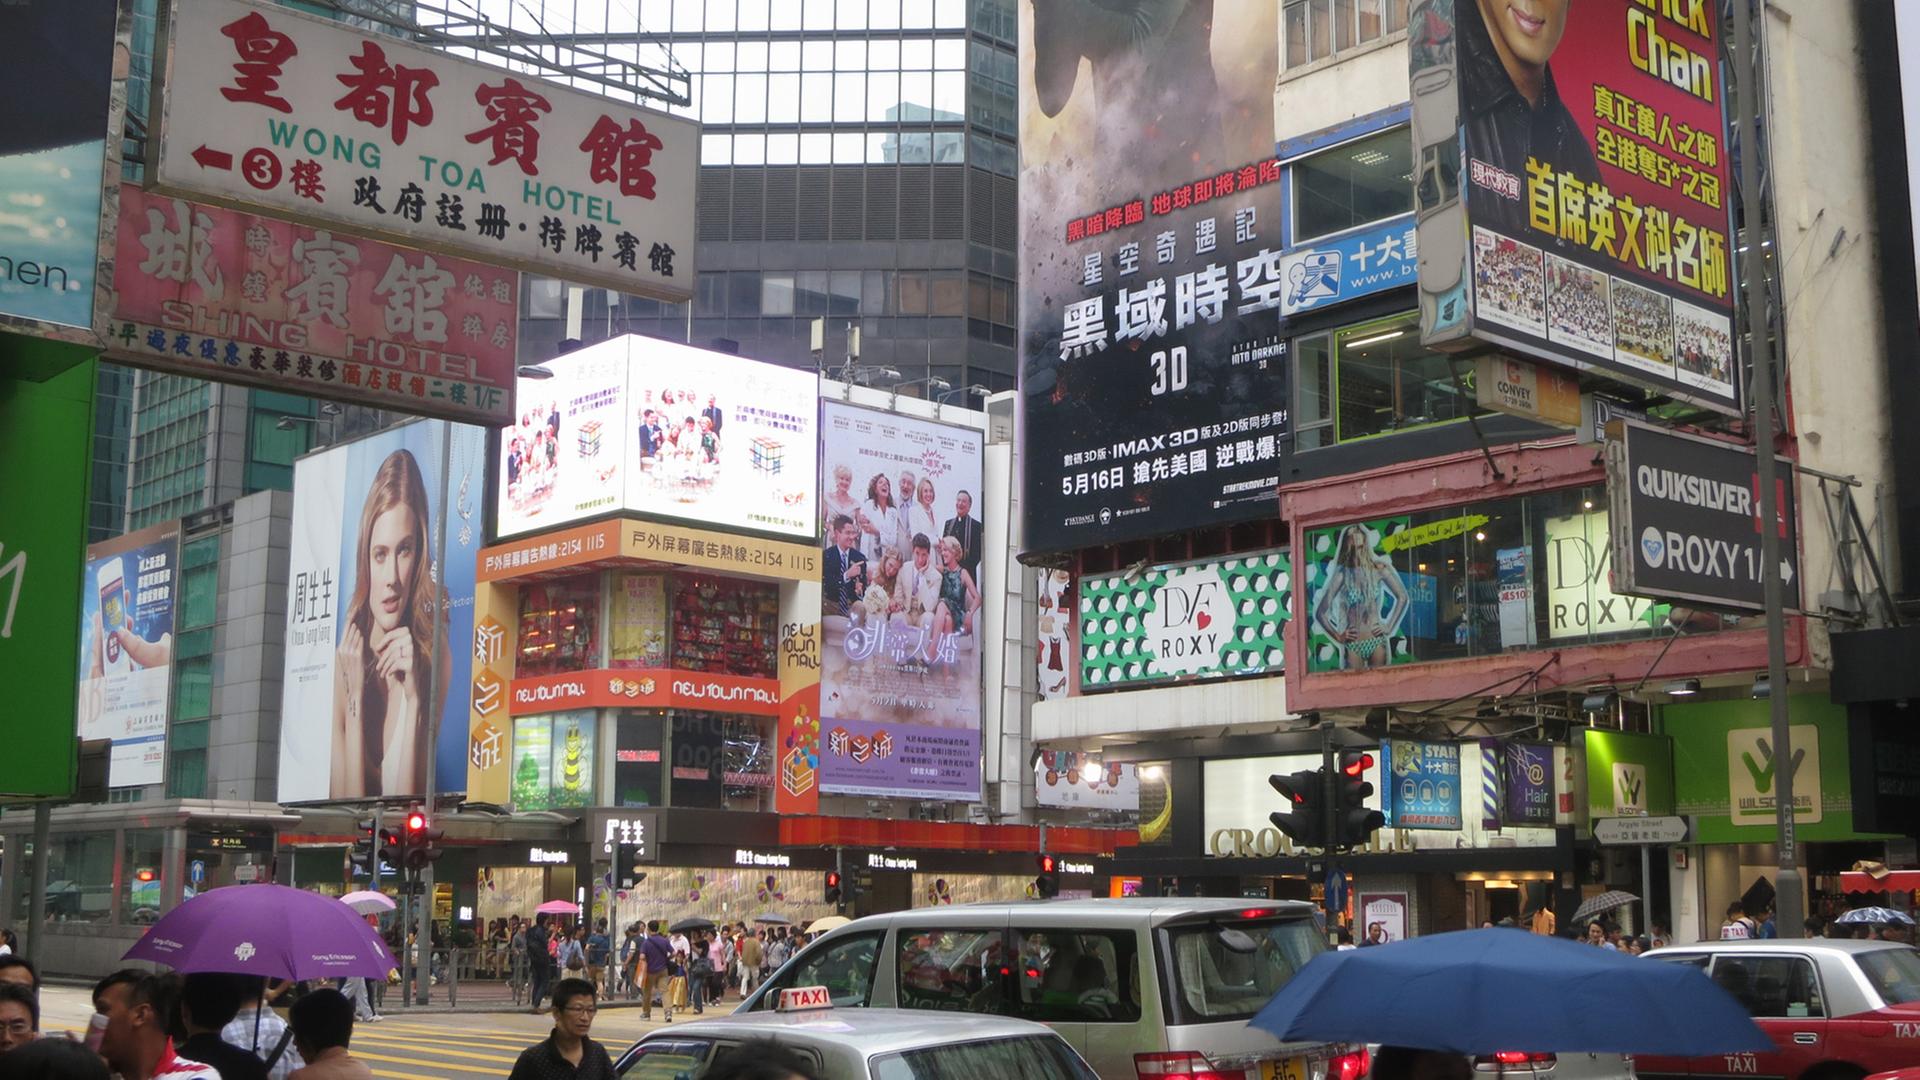 Reklame dominiert die Hausfassaden der Hauptstraße Nathan Road in Kowloon, ein Festland-Stadtteil von Hongkong, Aufnahme von 2013